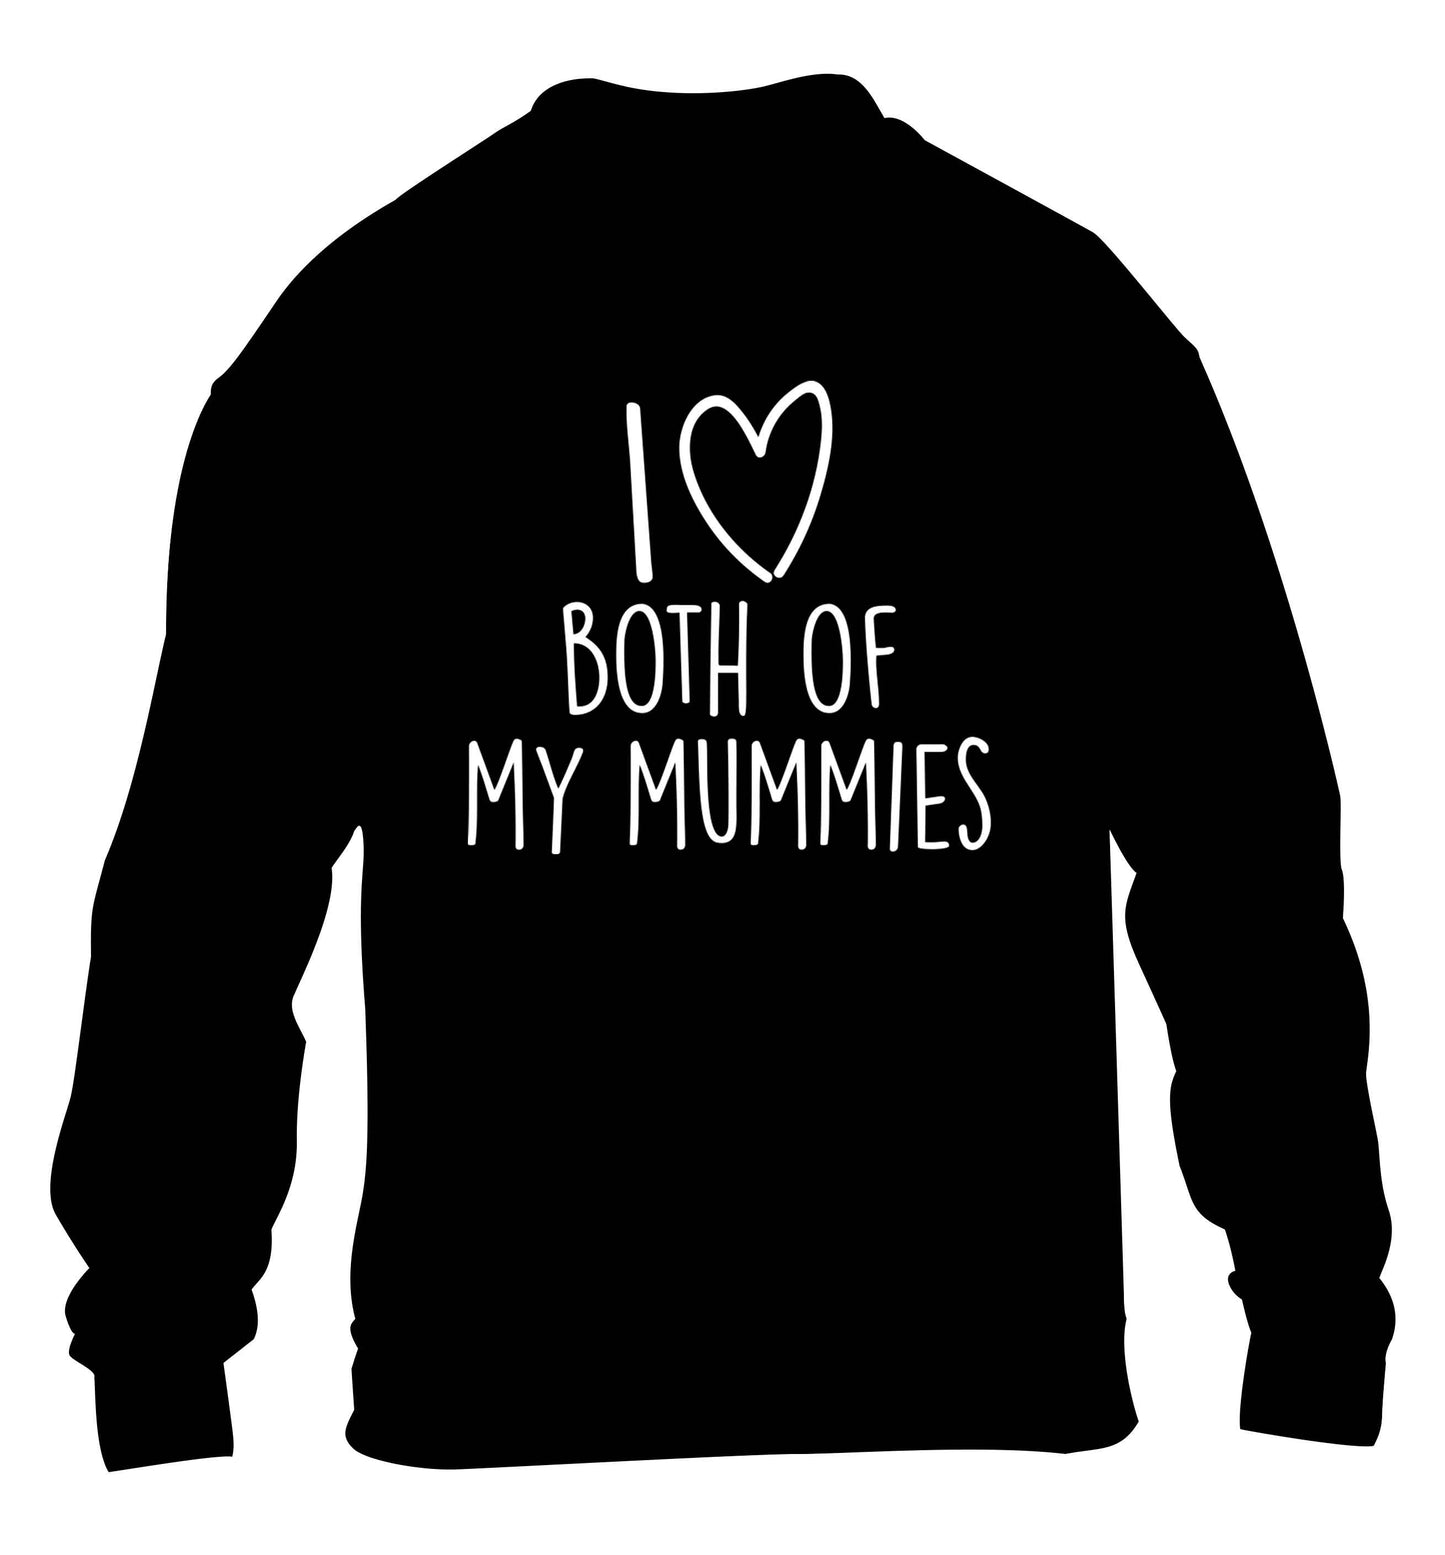 I love both of my mummies children's black sweater 12-13 Years